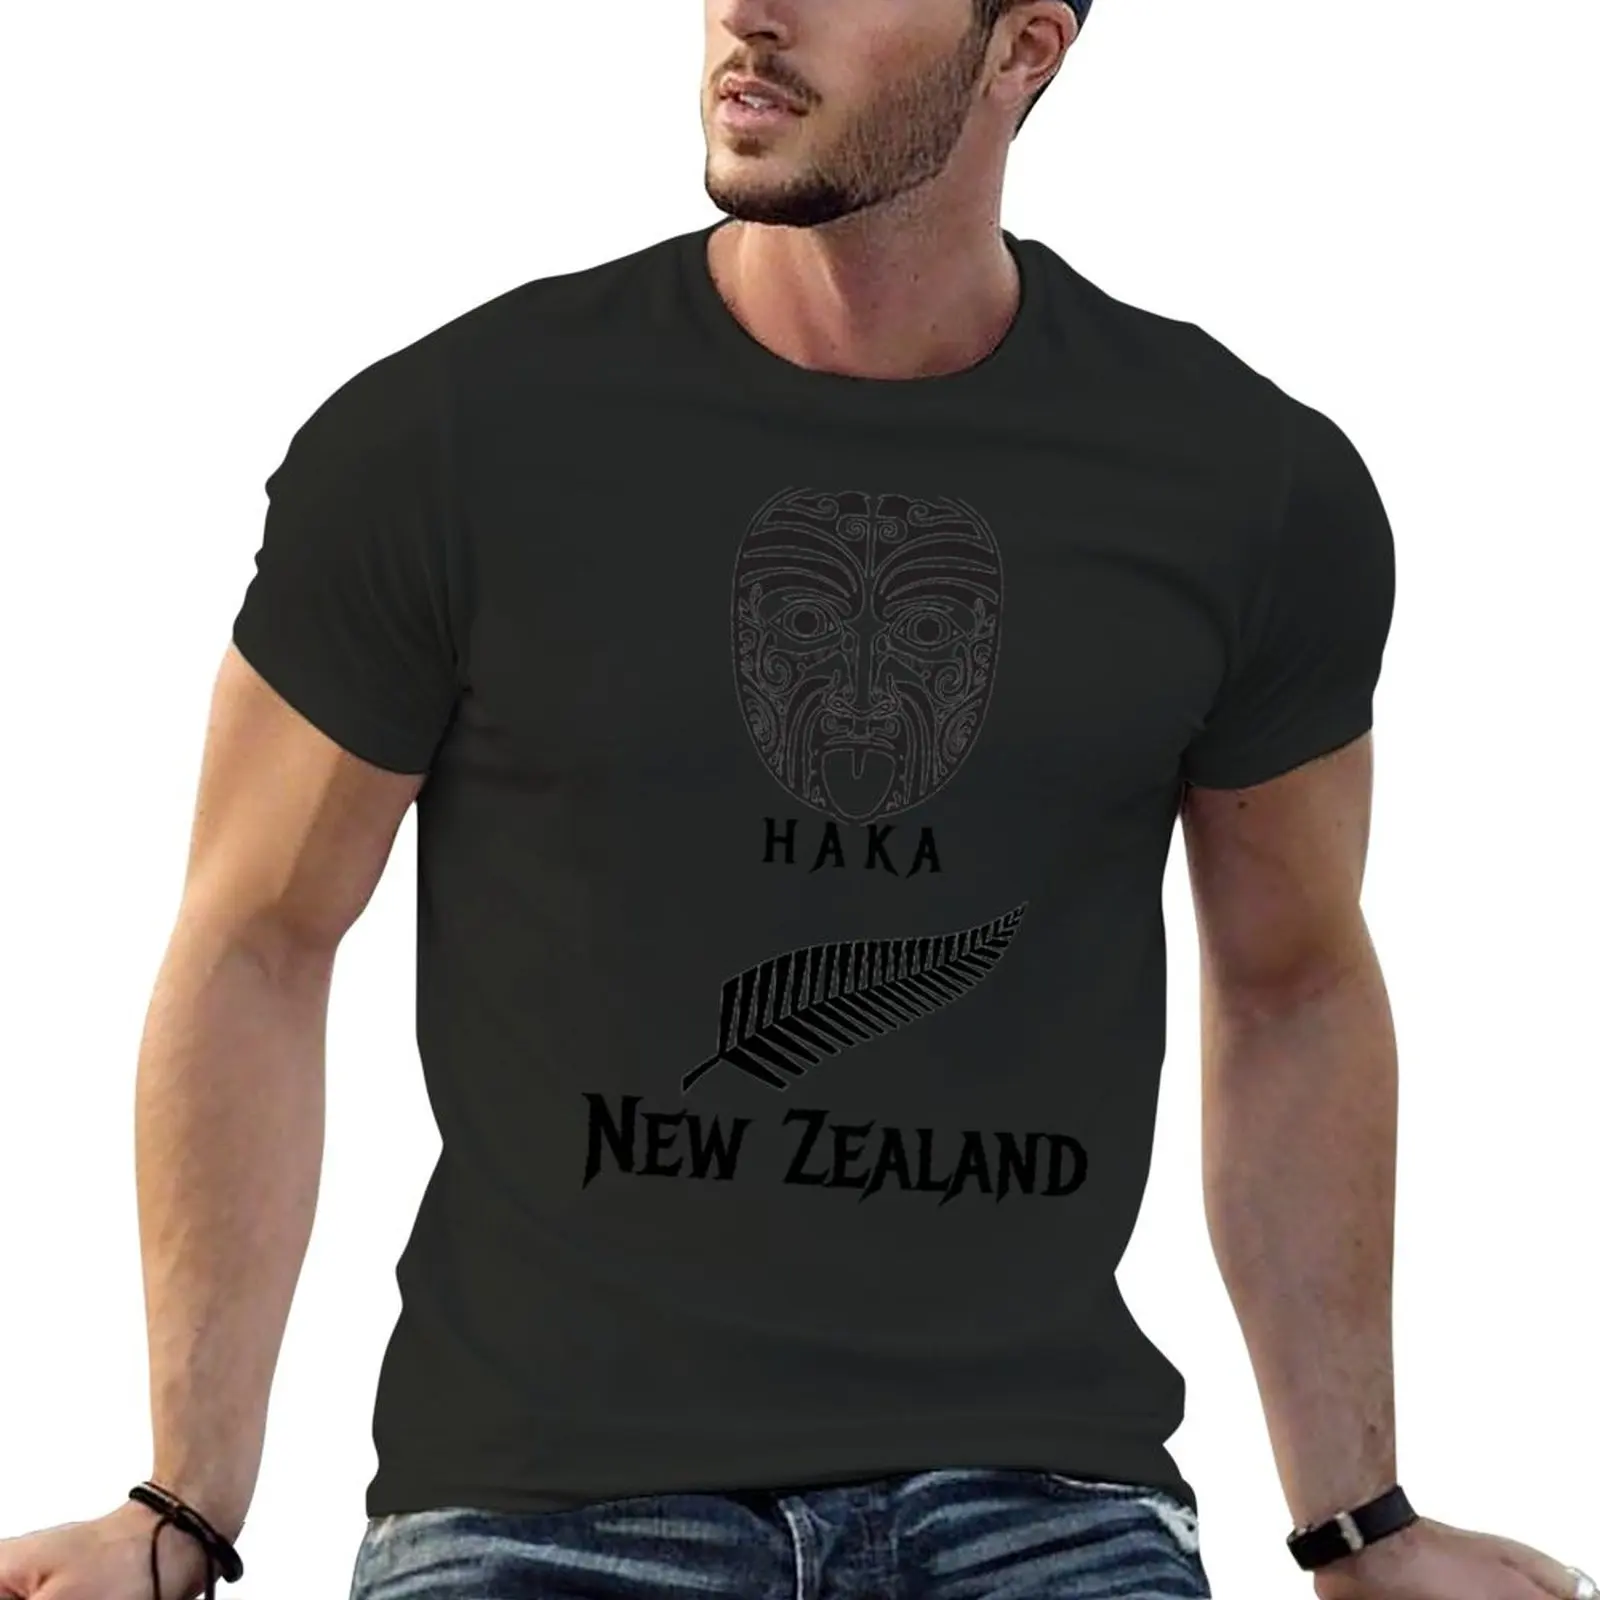 

Футболка Новая Зеландия, футболка с графическим принтом, летний топ для мальчиков, футболка с животным принтом, футболка большого размера, Мужская футболка s